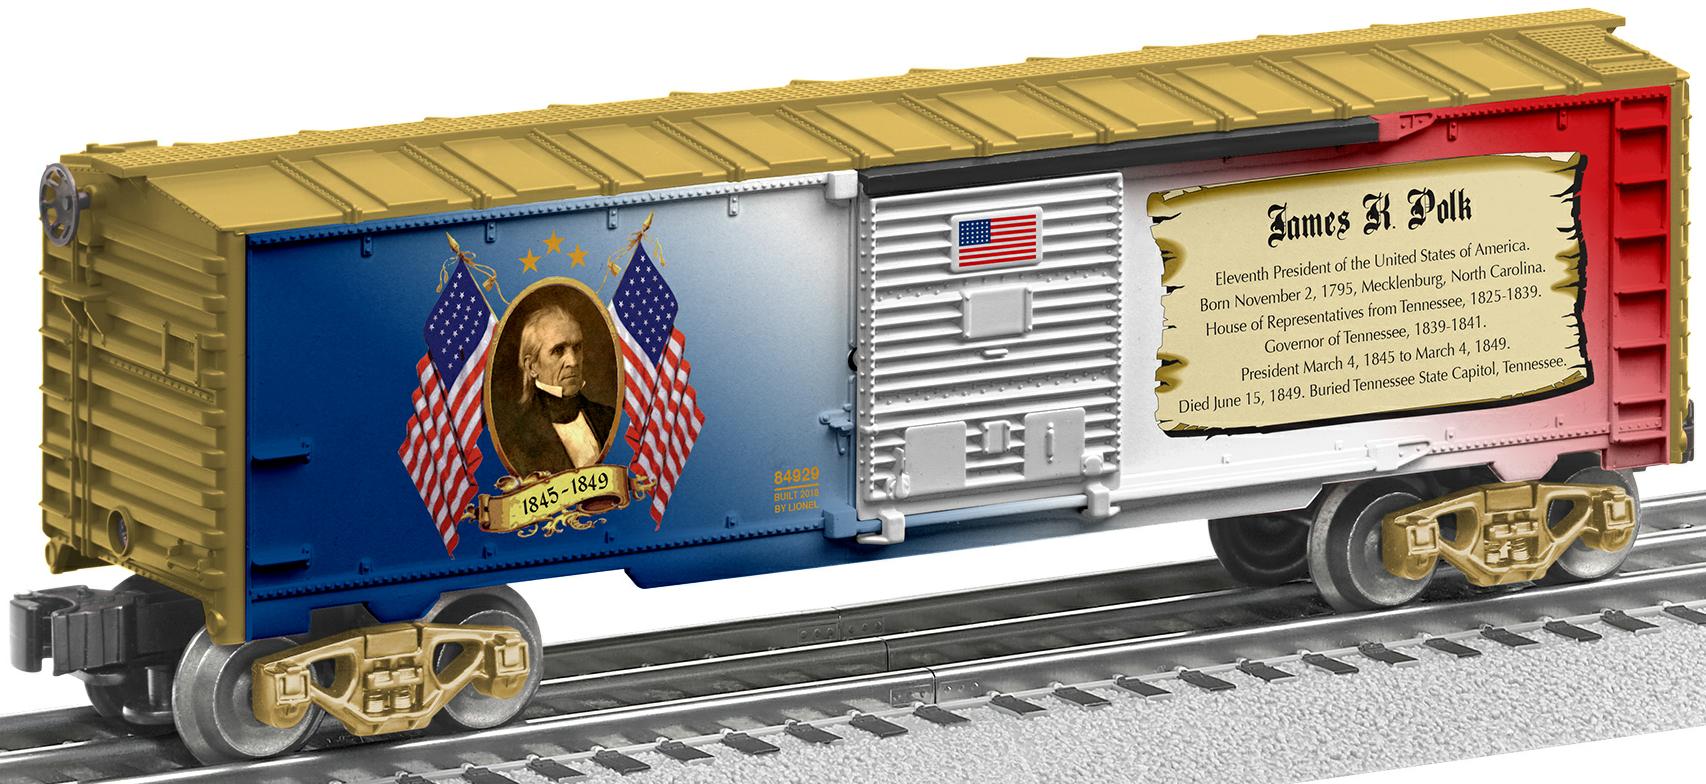 James K. Polk boxcar image